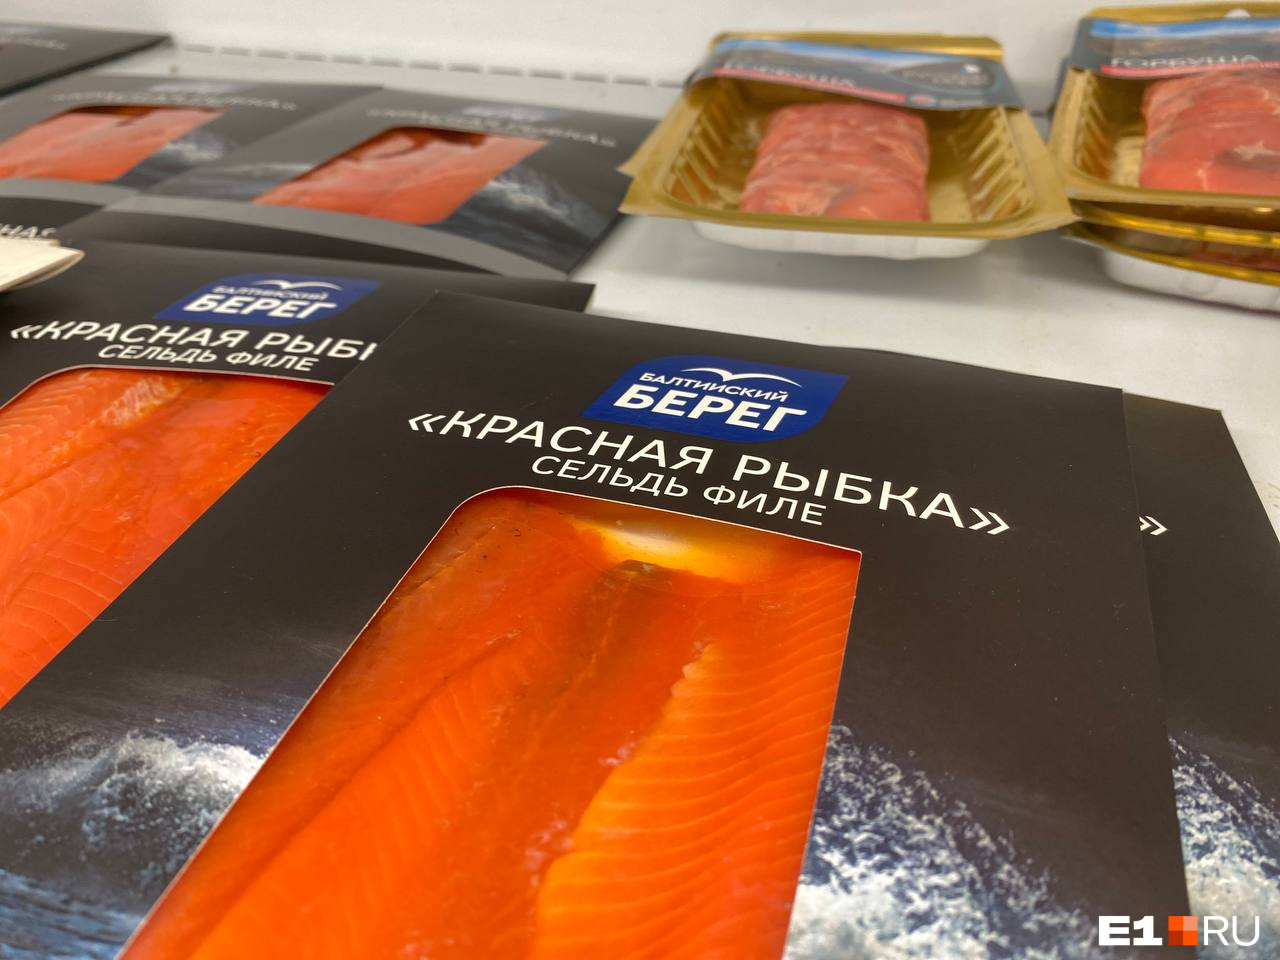 В Екатеринбурге начали продавать крашеную селедку под видом красной рыбы